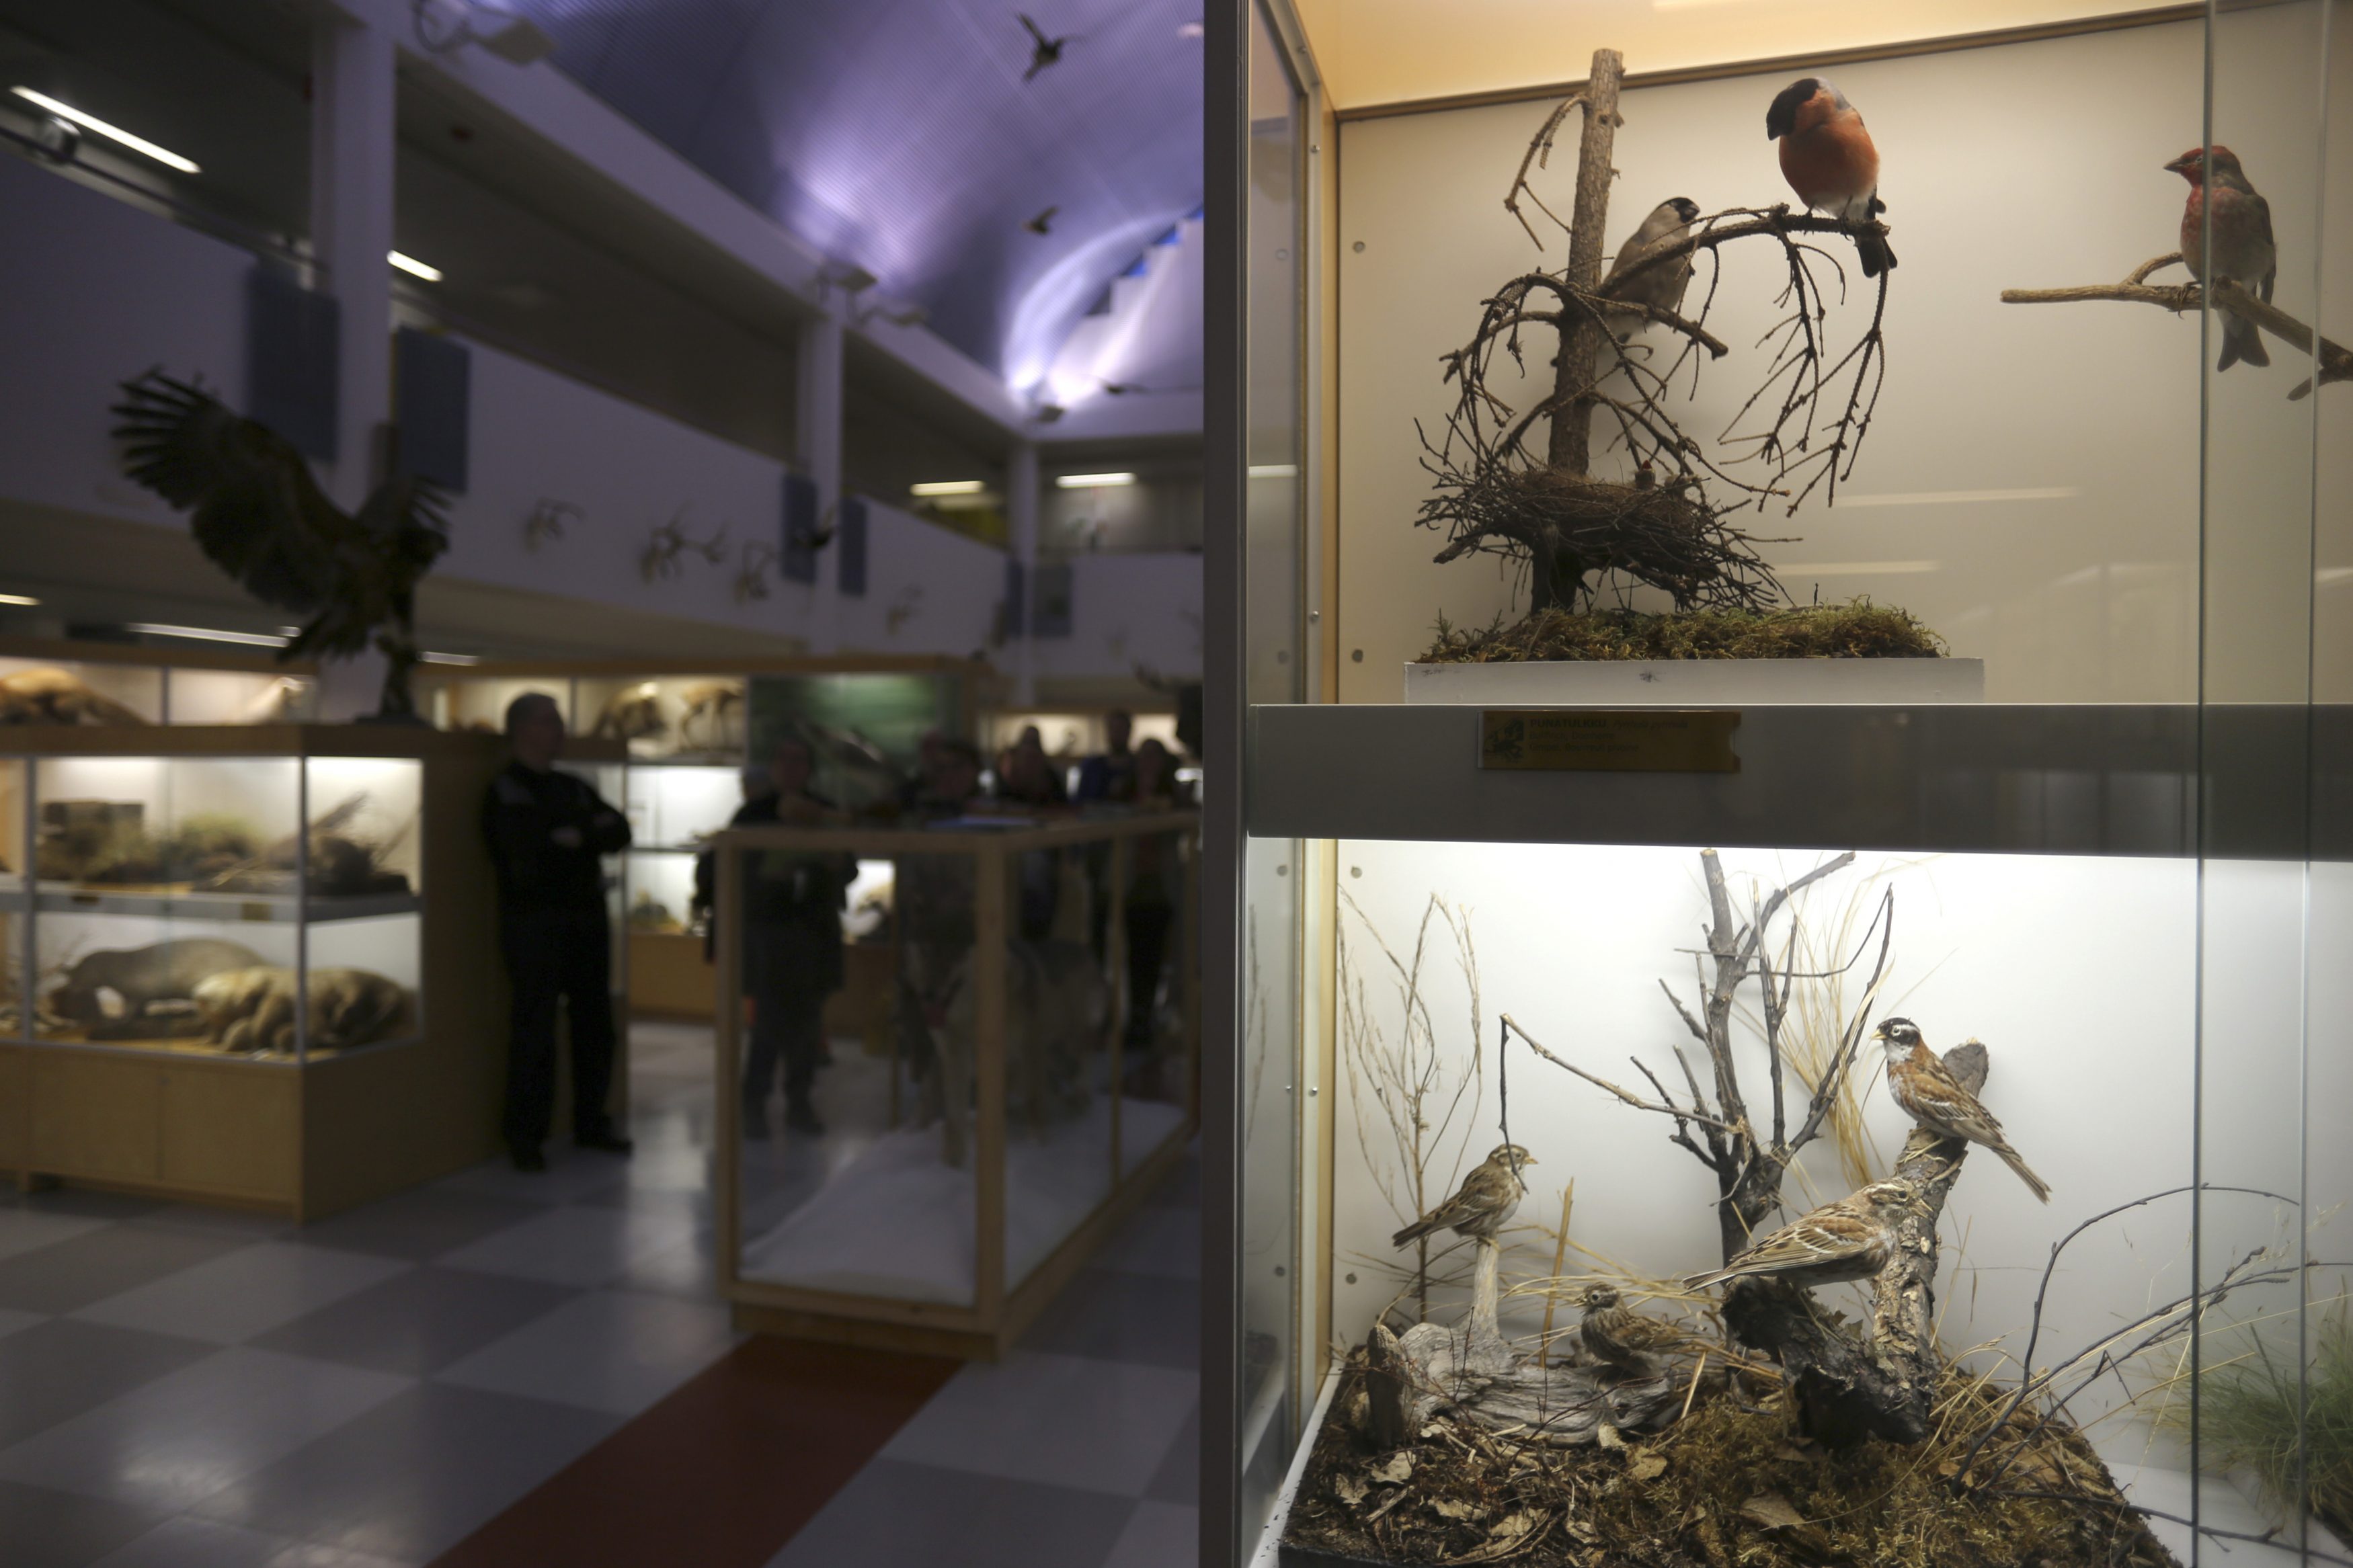 Oulun Tutkijoiden yössä voi vierailla virtuaalisessa eläinmuseossa – Selvitimme myös, mitä uutta sijaintia etsivälle eläinmuseolle kuuluu nyt